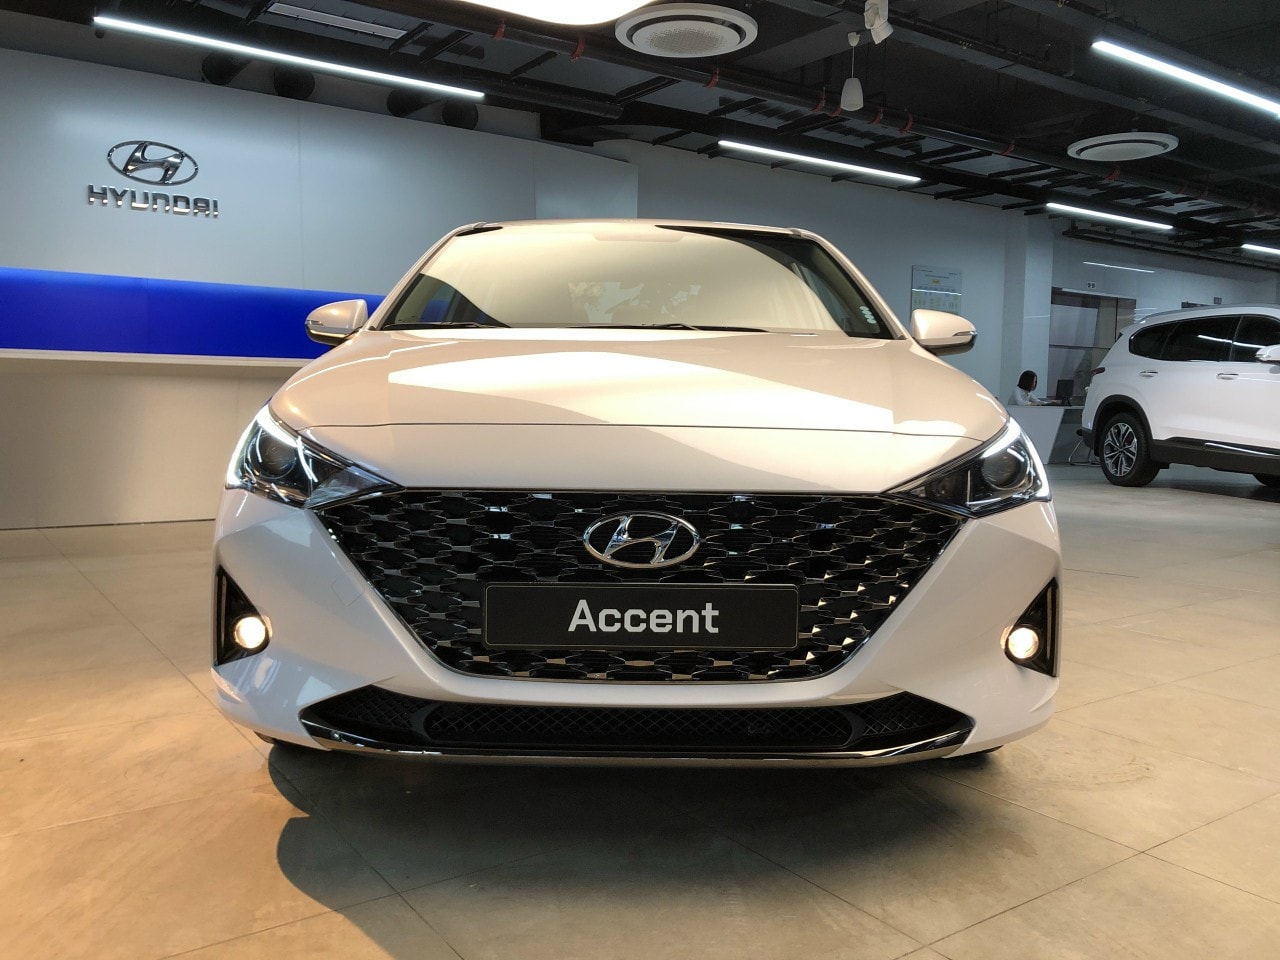 Đại lý ồ ạt nhận đặt cọc Hyundai Accent 2021: Bản full giá dự kiến cao nhất 570 triệu đồng - Ảnh 2.